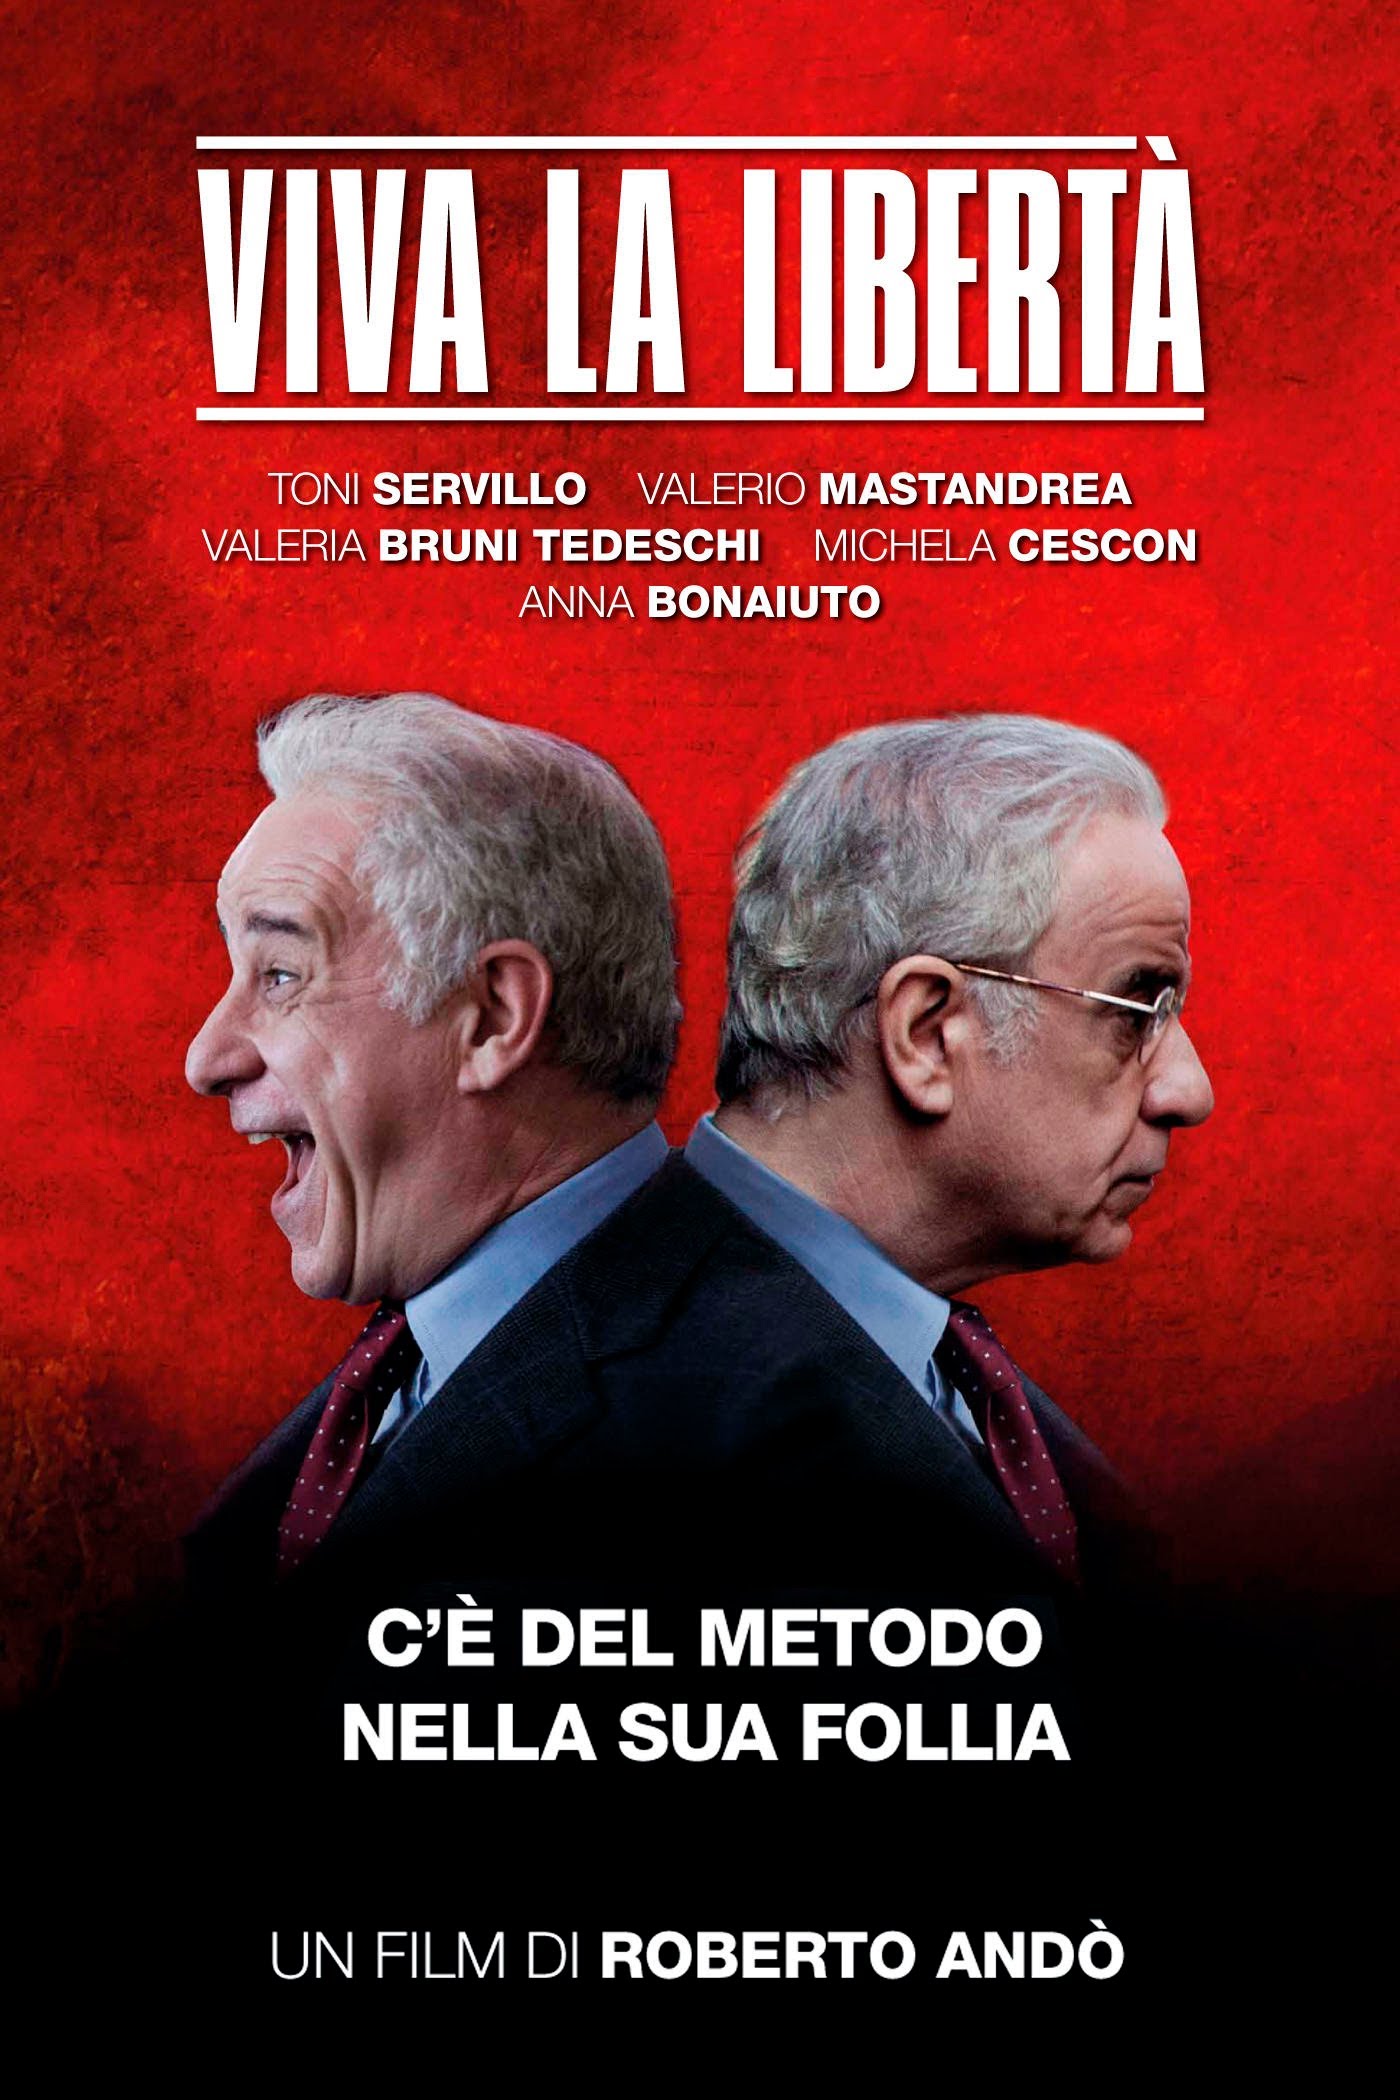 Viva la libertà [HD] (2013)